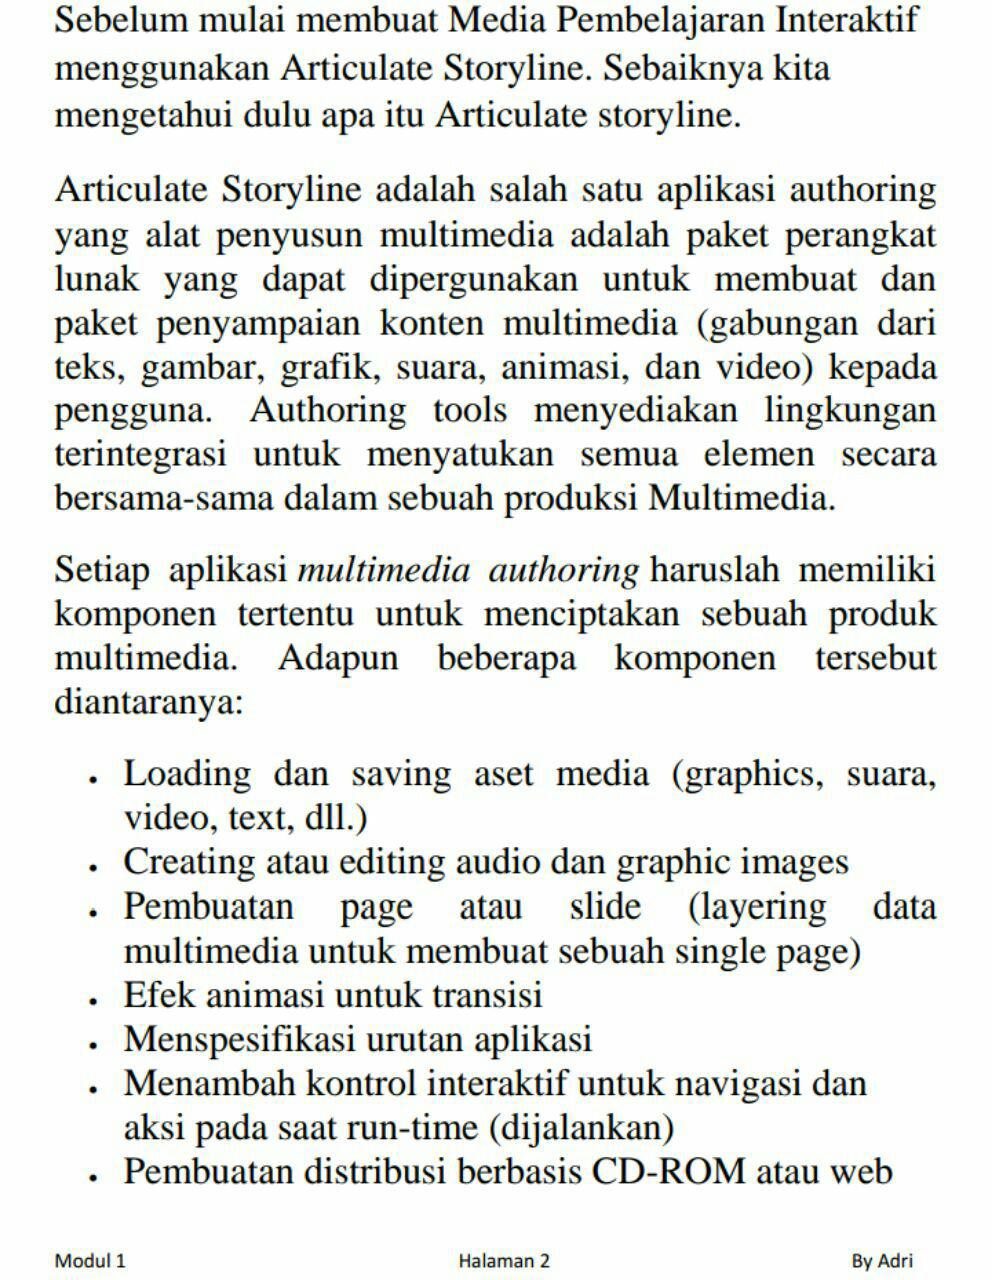 Storyline adalah